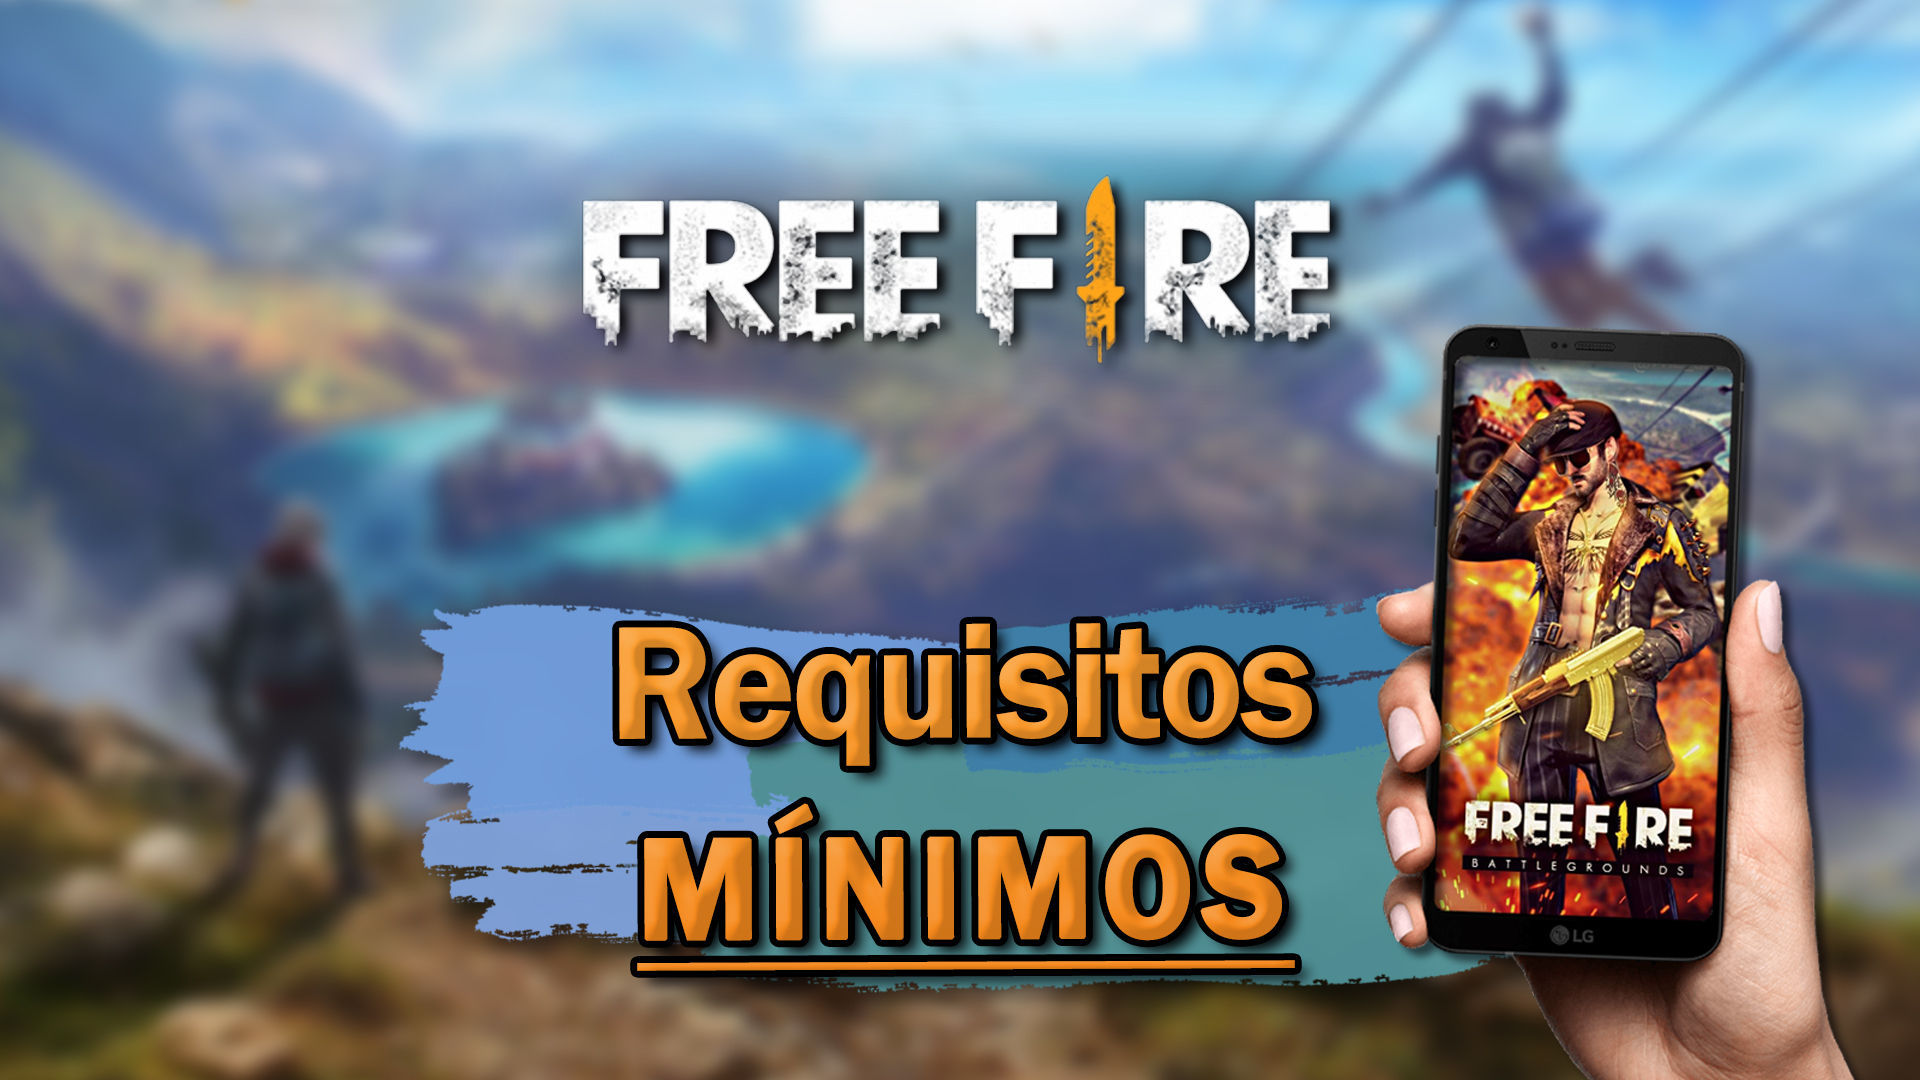 Free Fire: requisitos para baixar e jogar em celular Android, iPhone e PC